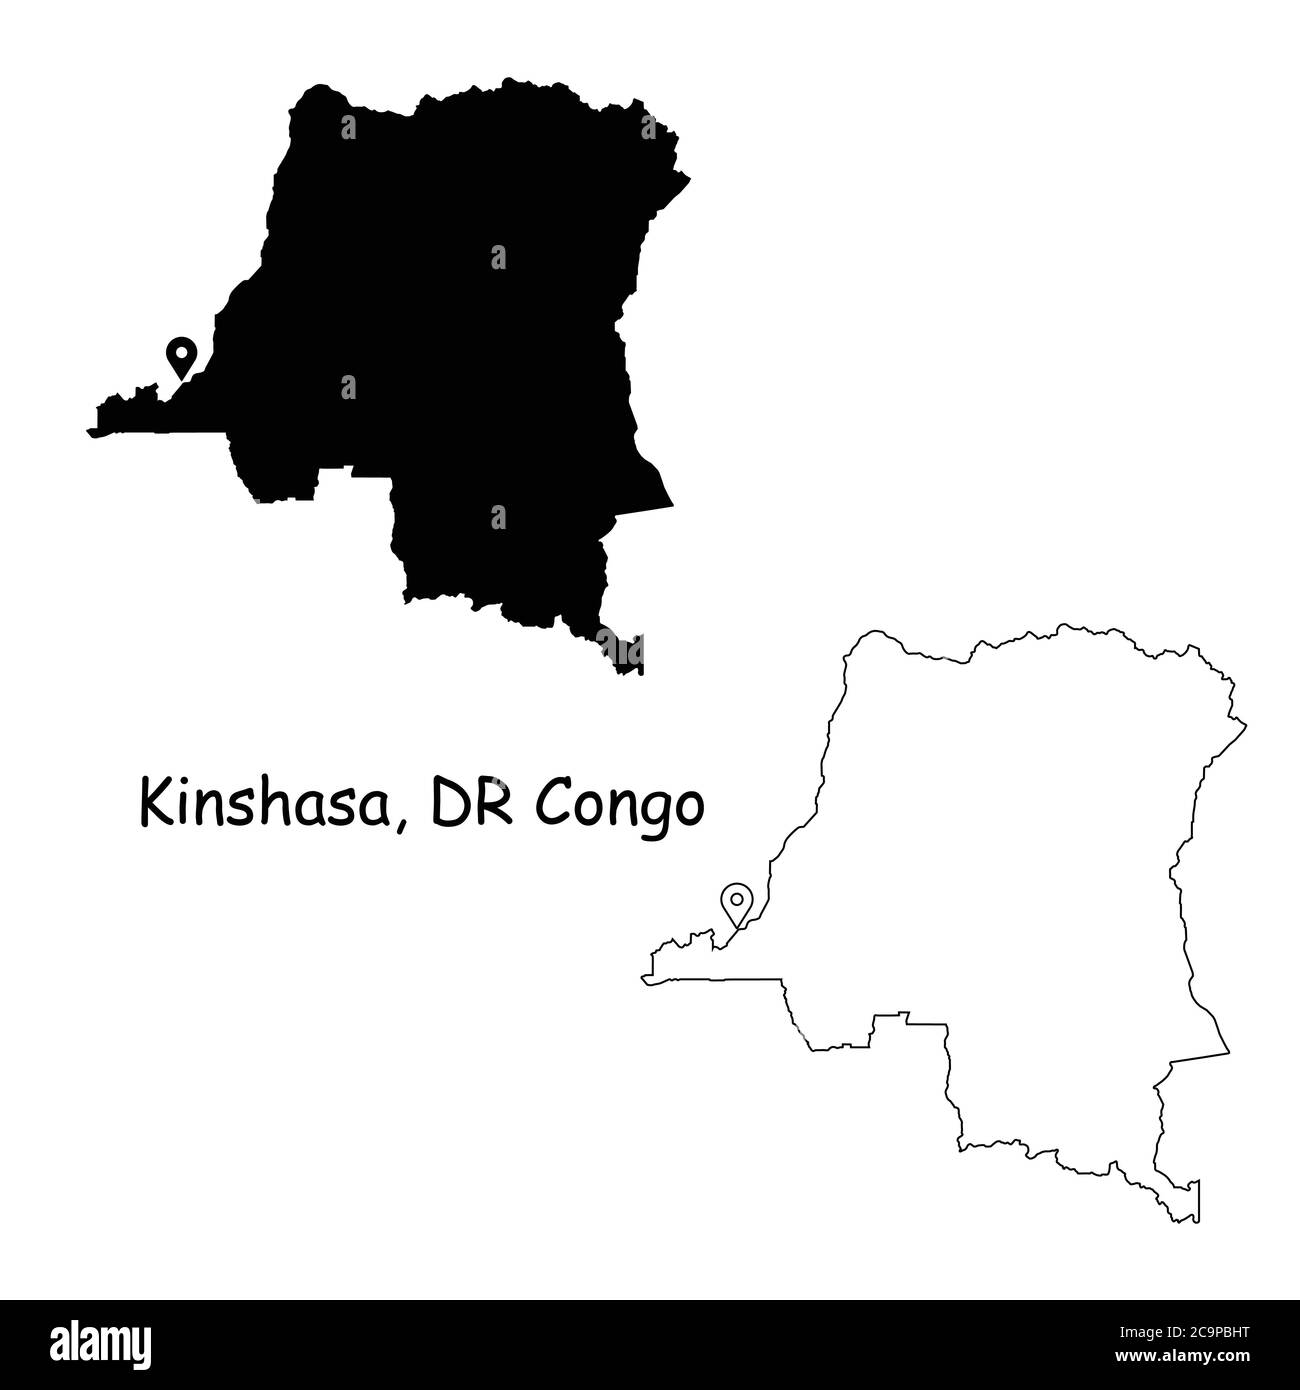 Kinshasa République démocratique du Congo. Carte détaillée du pays avec broche d'emplacement sur Capital City. Cartes de silhouette et de contour noires isolées sur blanc Illustration de Vecteur